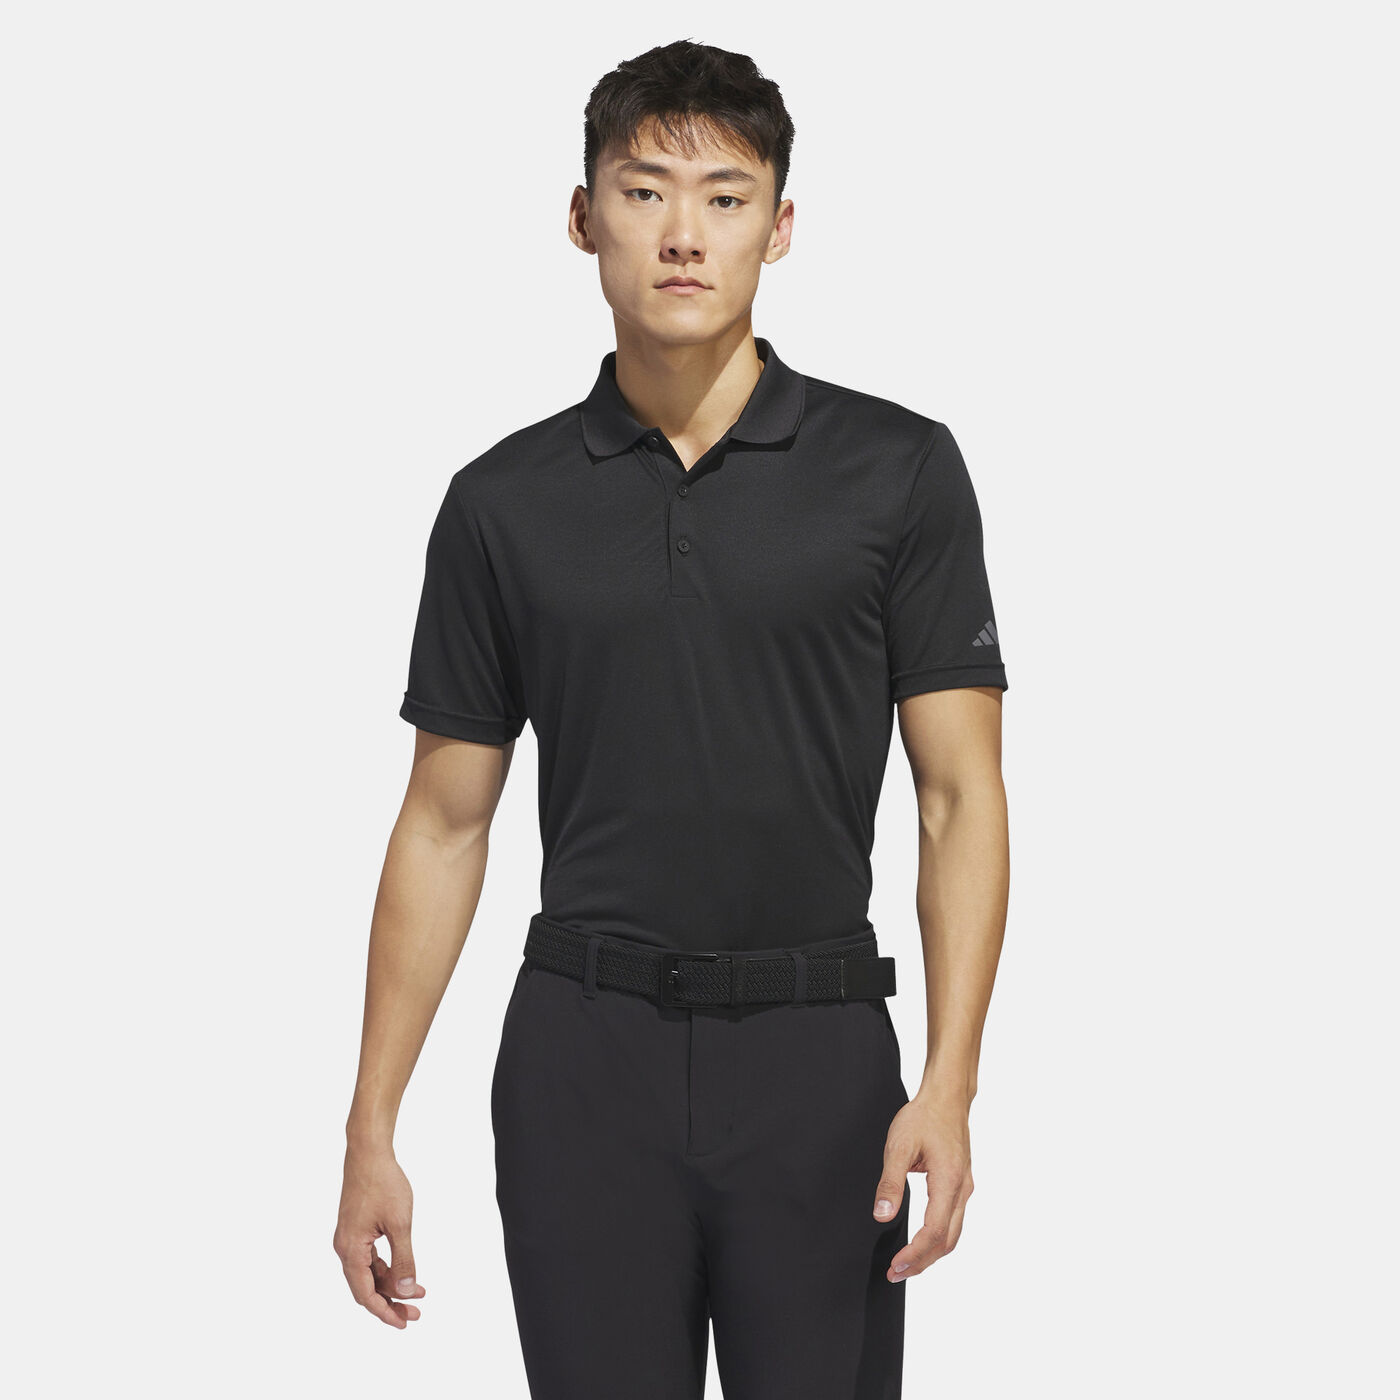 Men's Core Performance Primegreen Polo Shirt